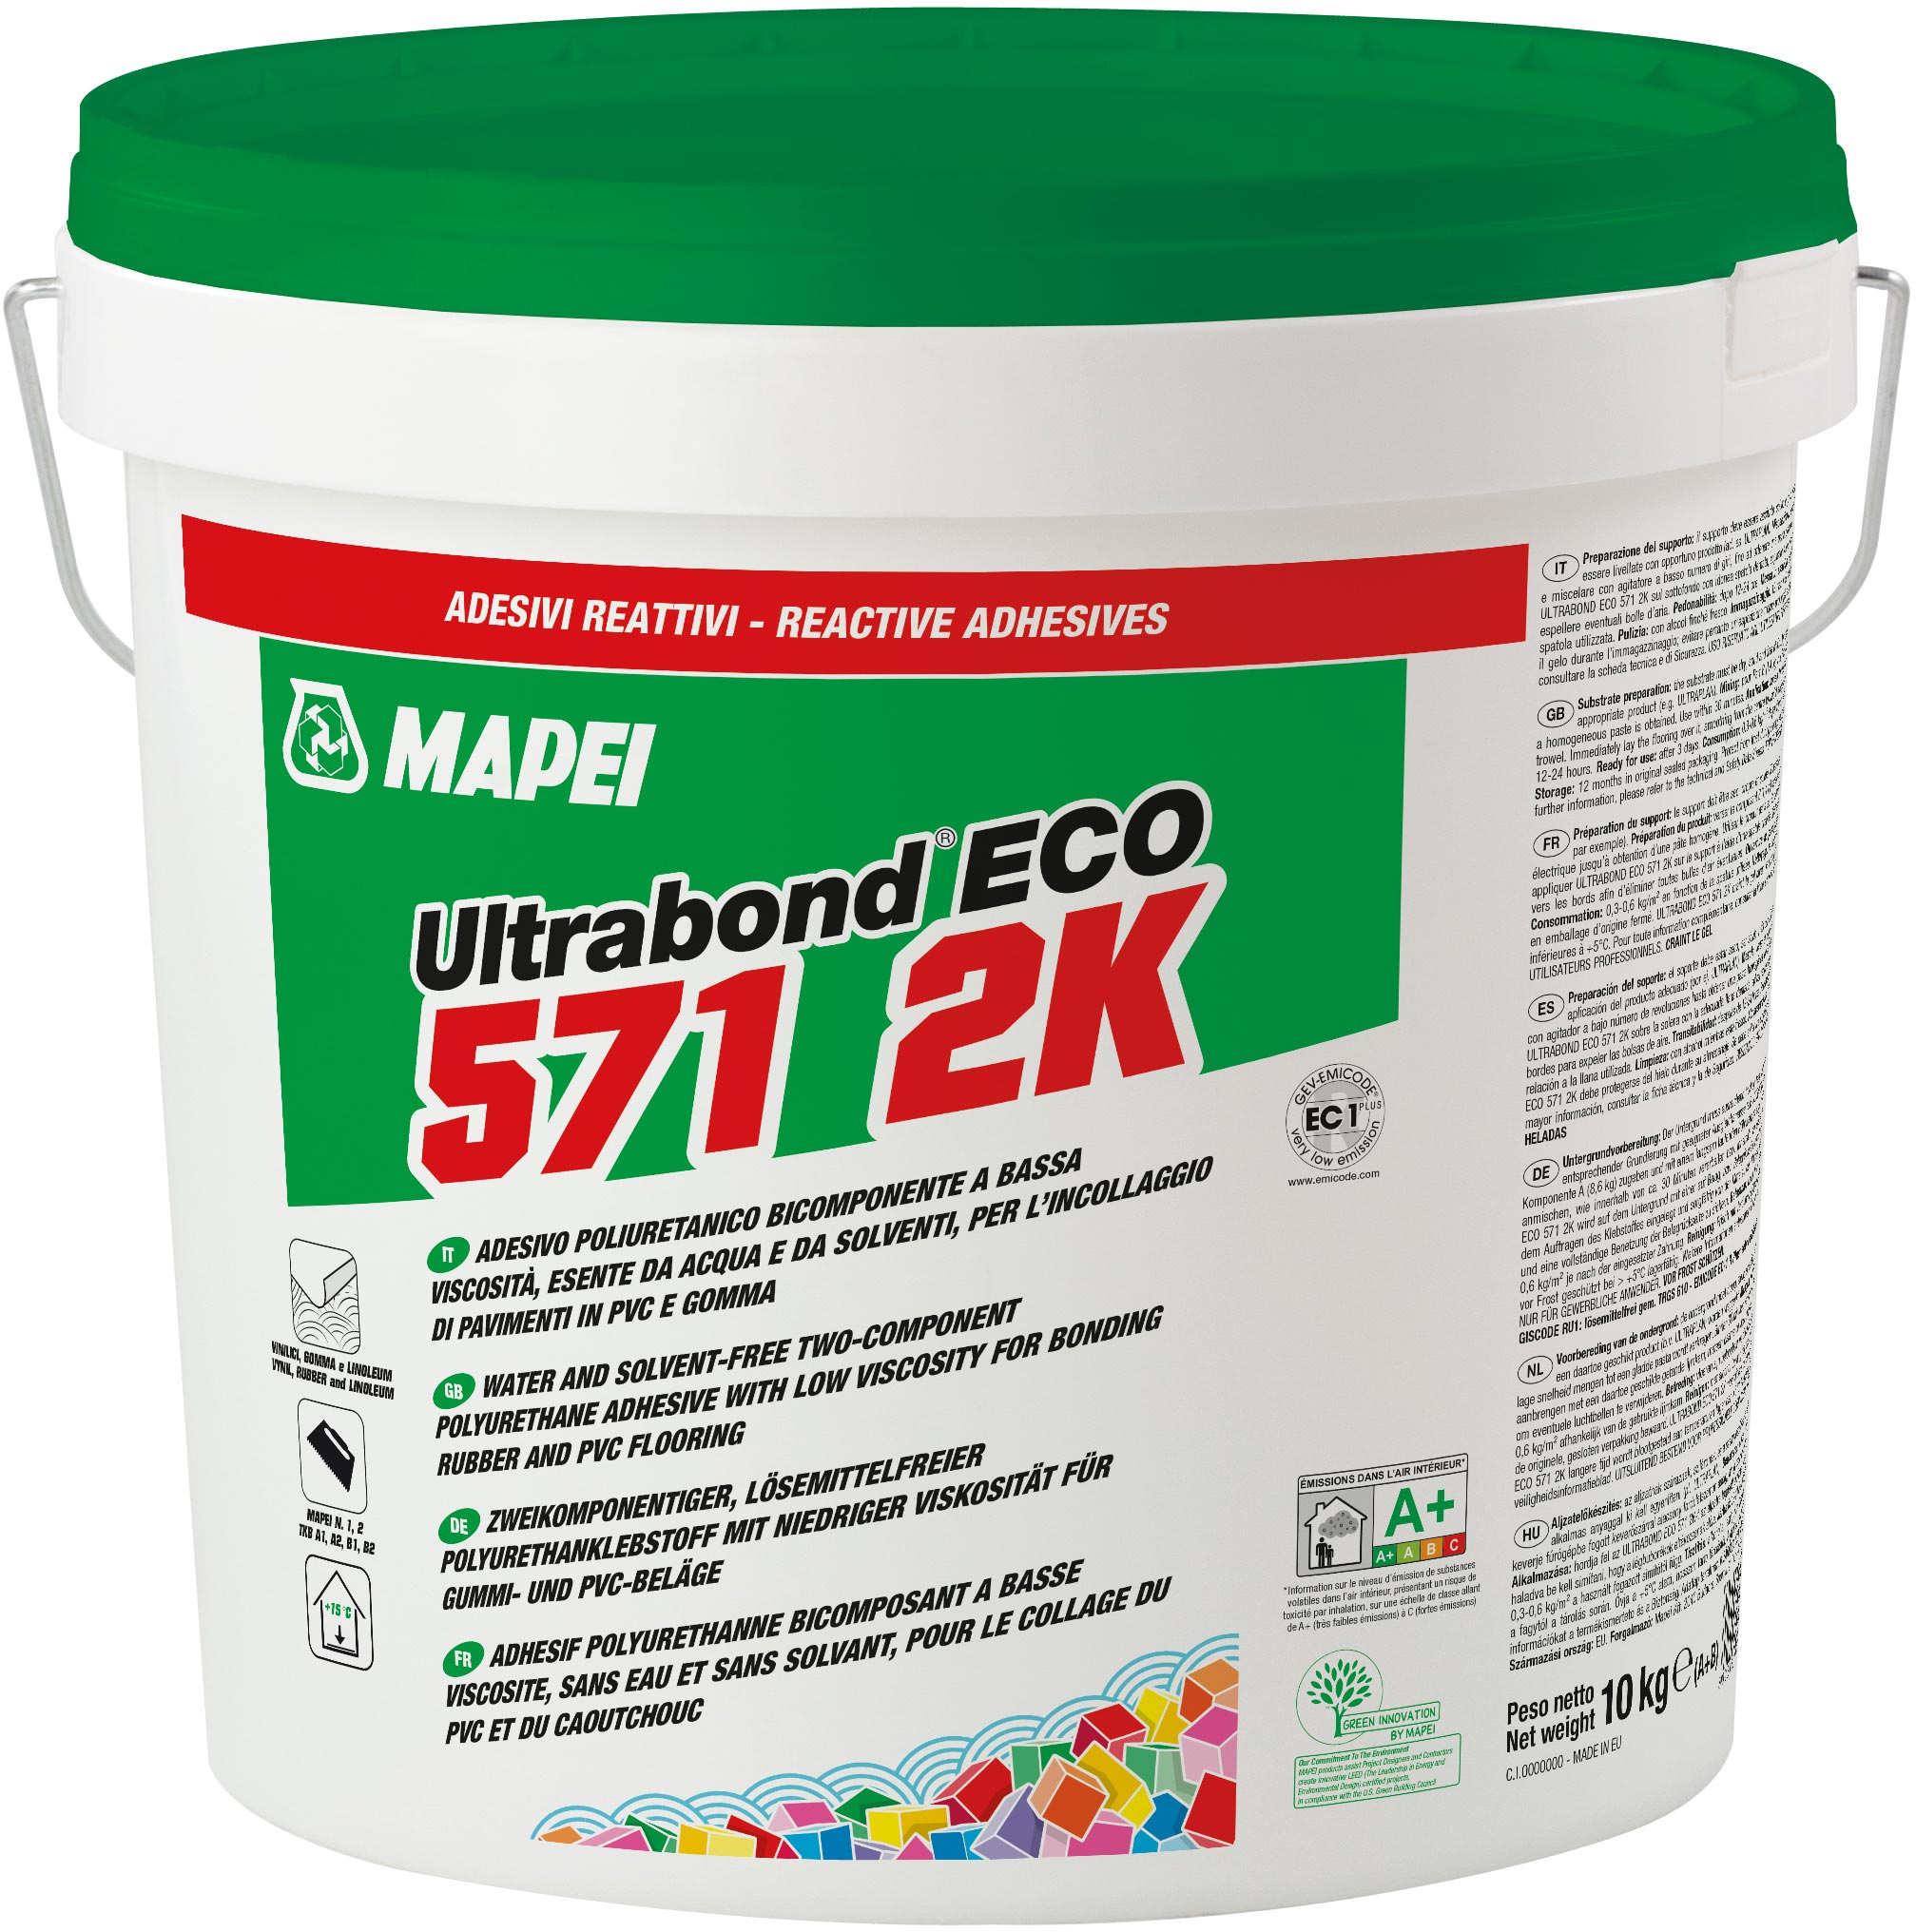 Ultrabond Eco 571 2K - Gebinde à 9+1 kg